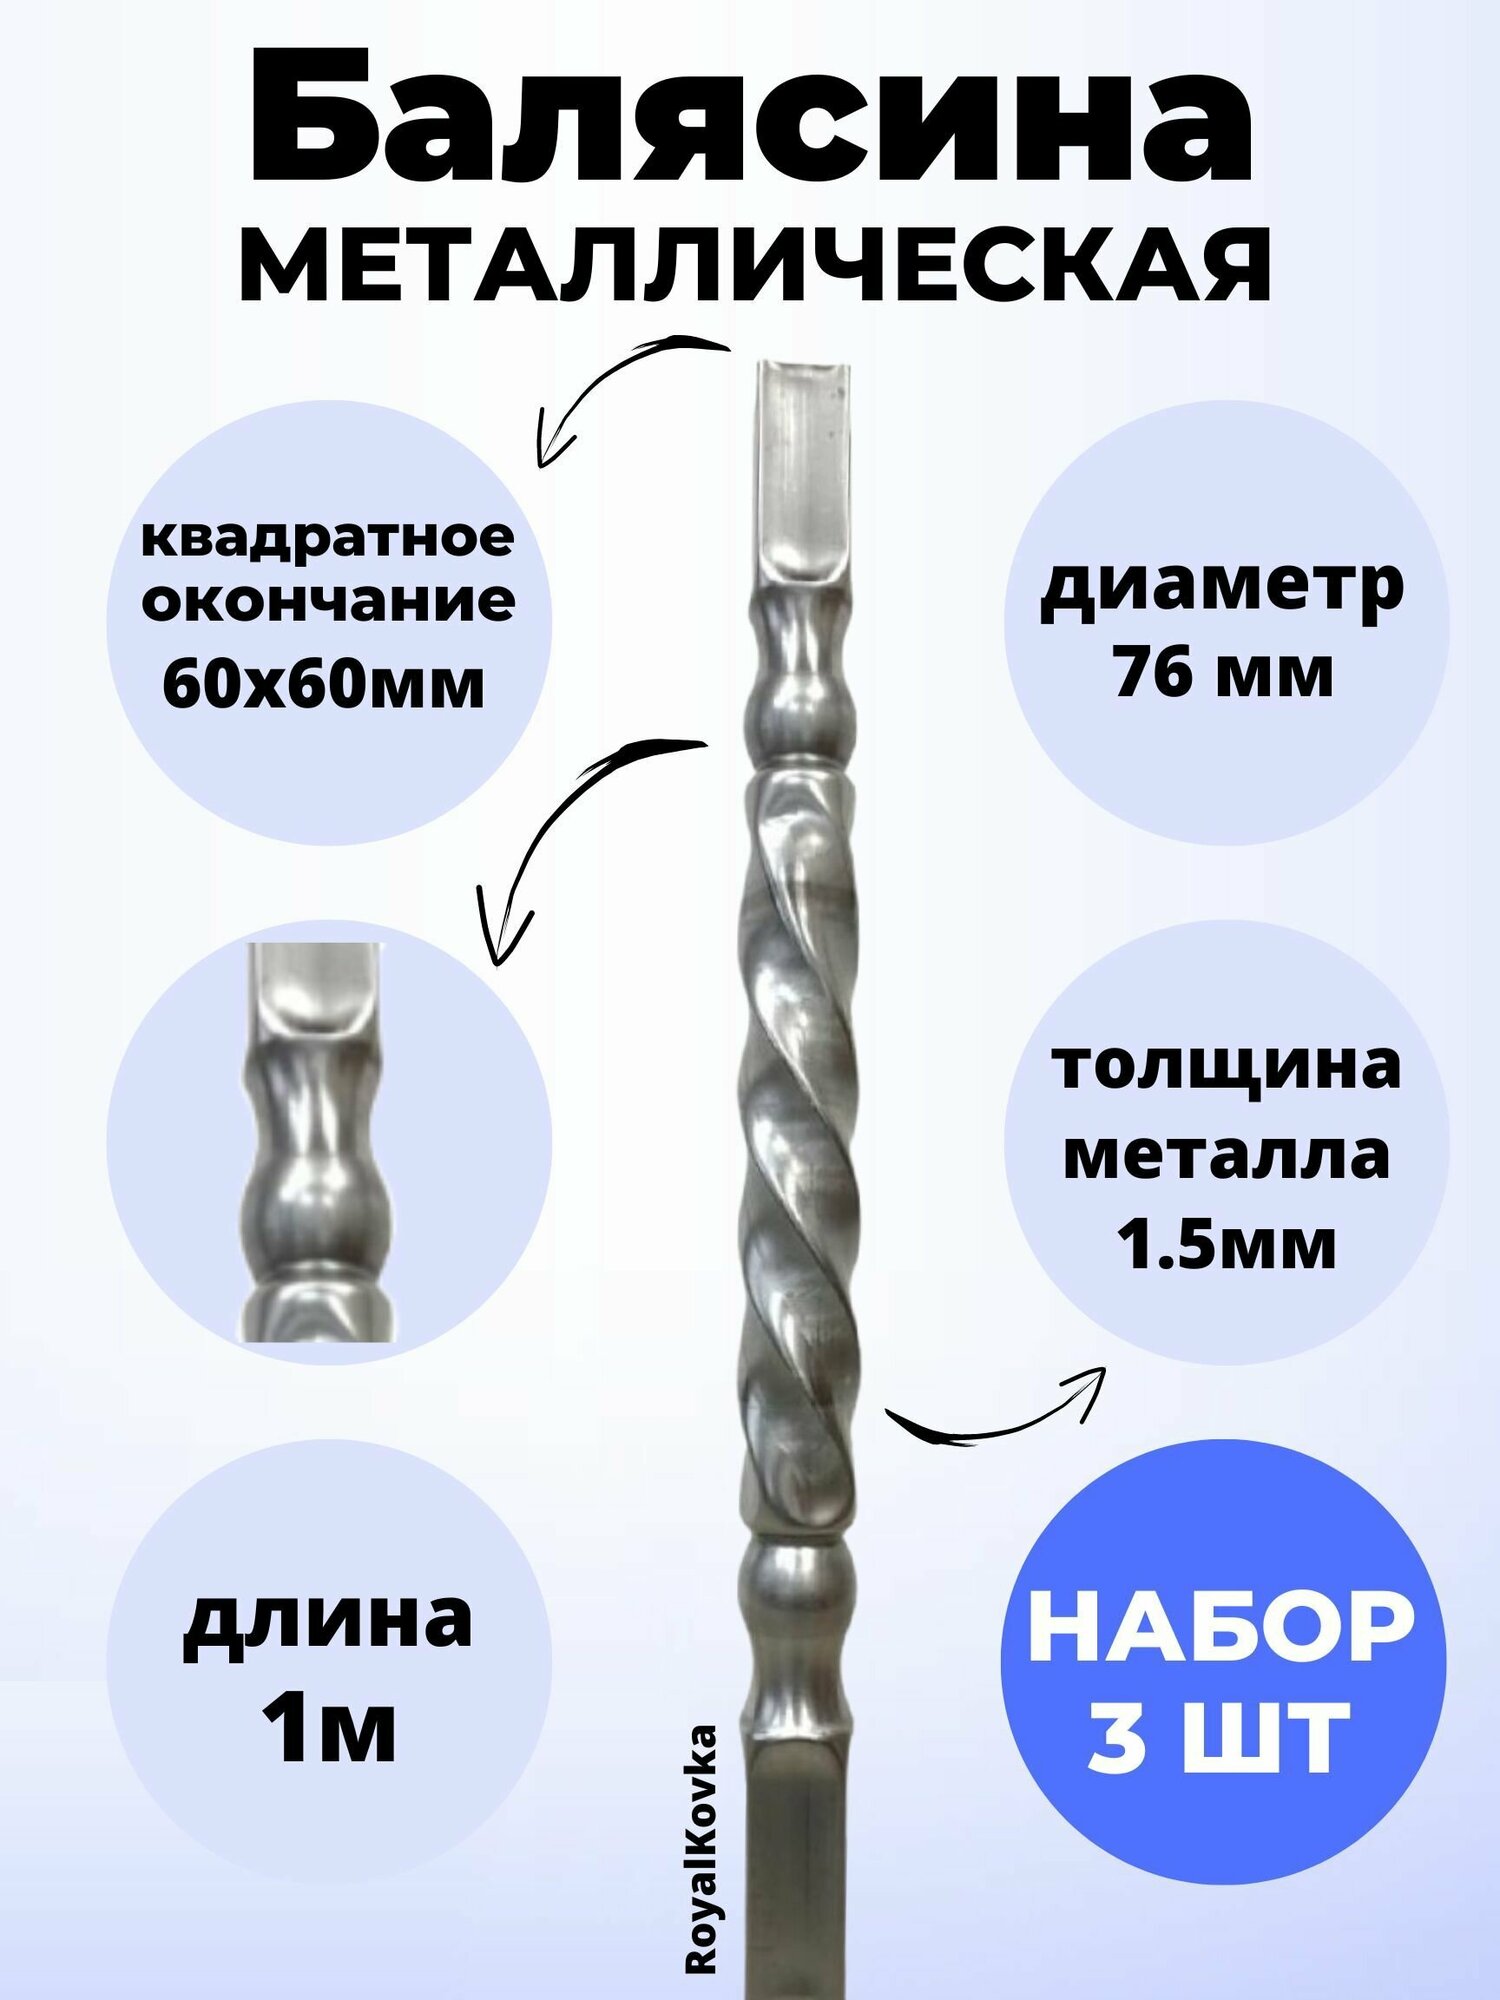 Набор балясин кованых металлических Royal Kovka, 3 шт, диаметр 76 мм, квадратные окончания 60х60 мм, арт. 60*60.3 В. КВ 3